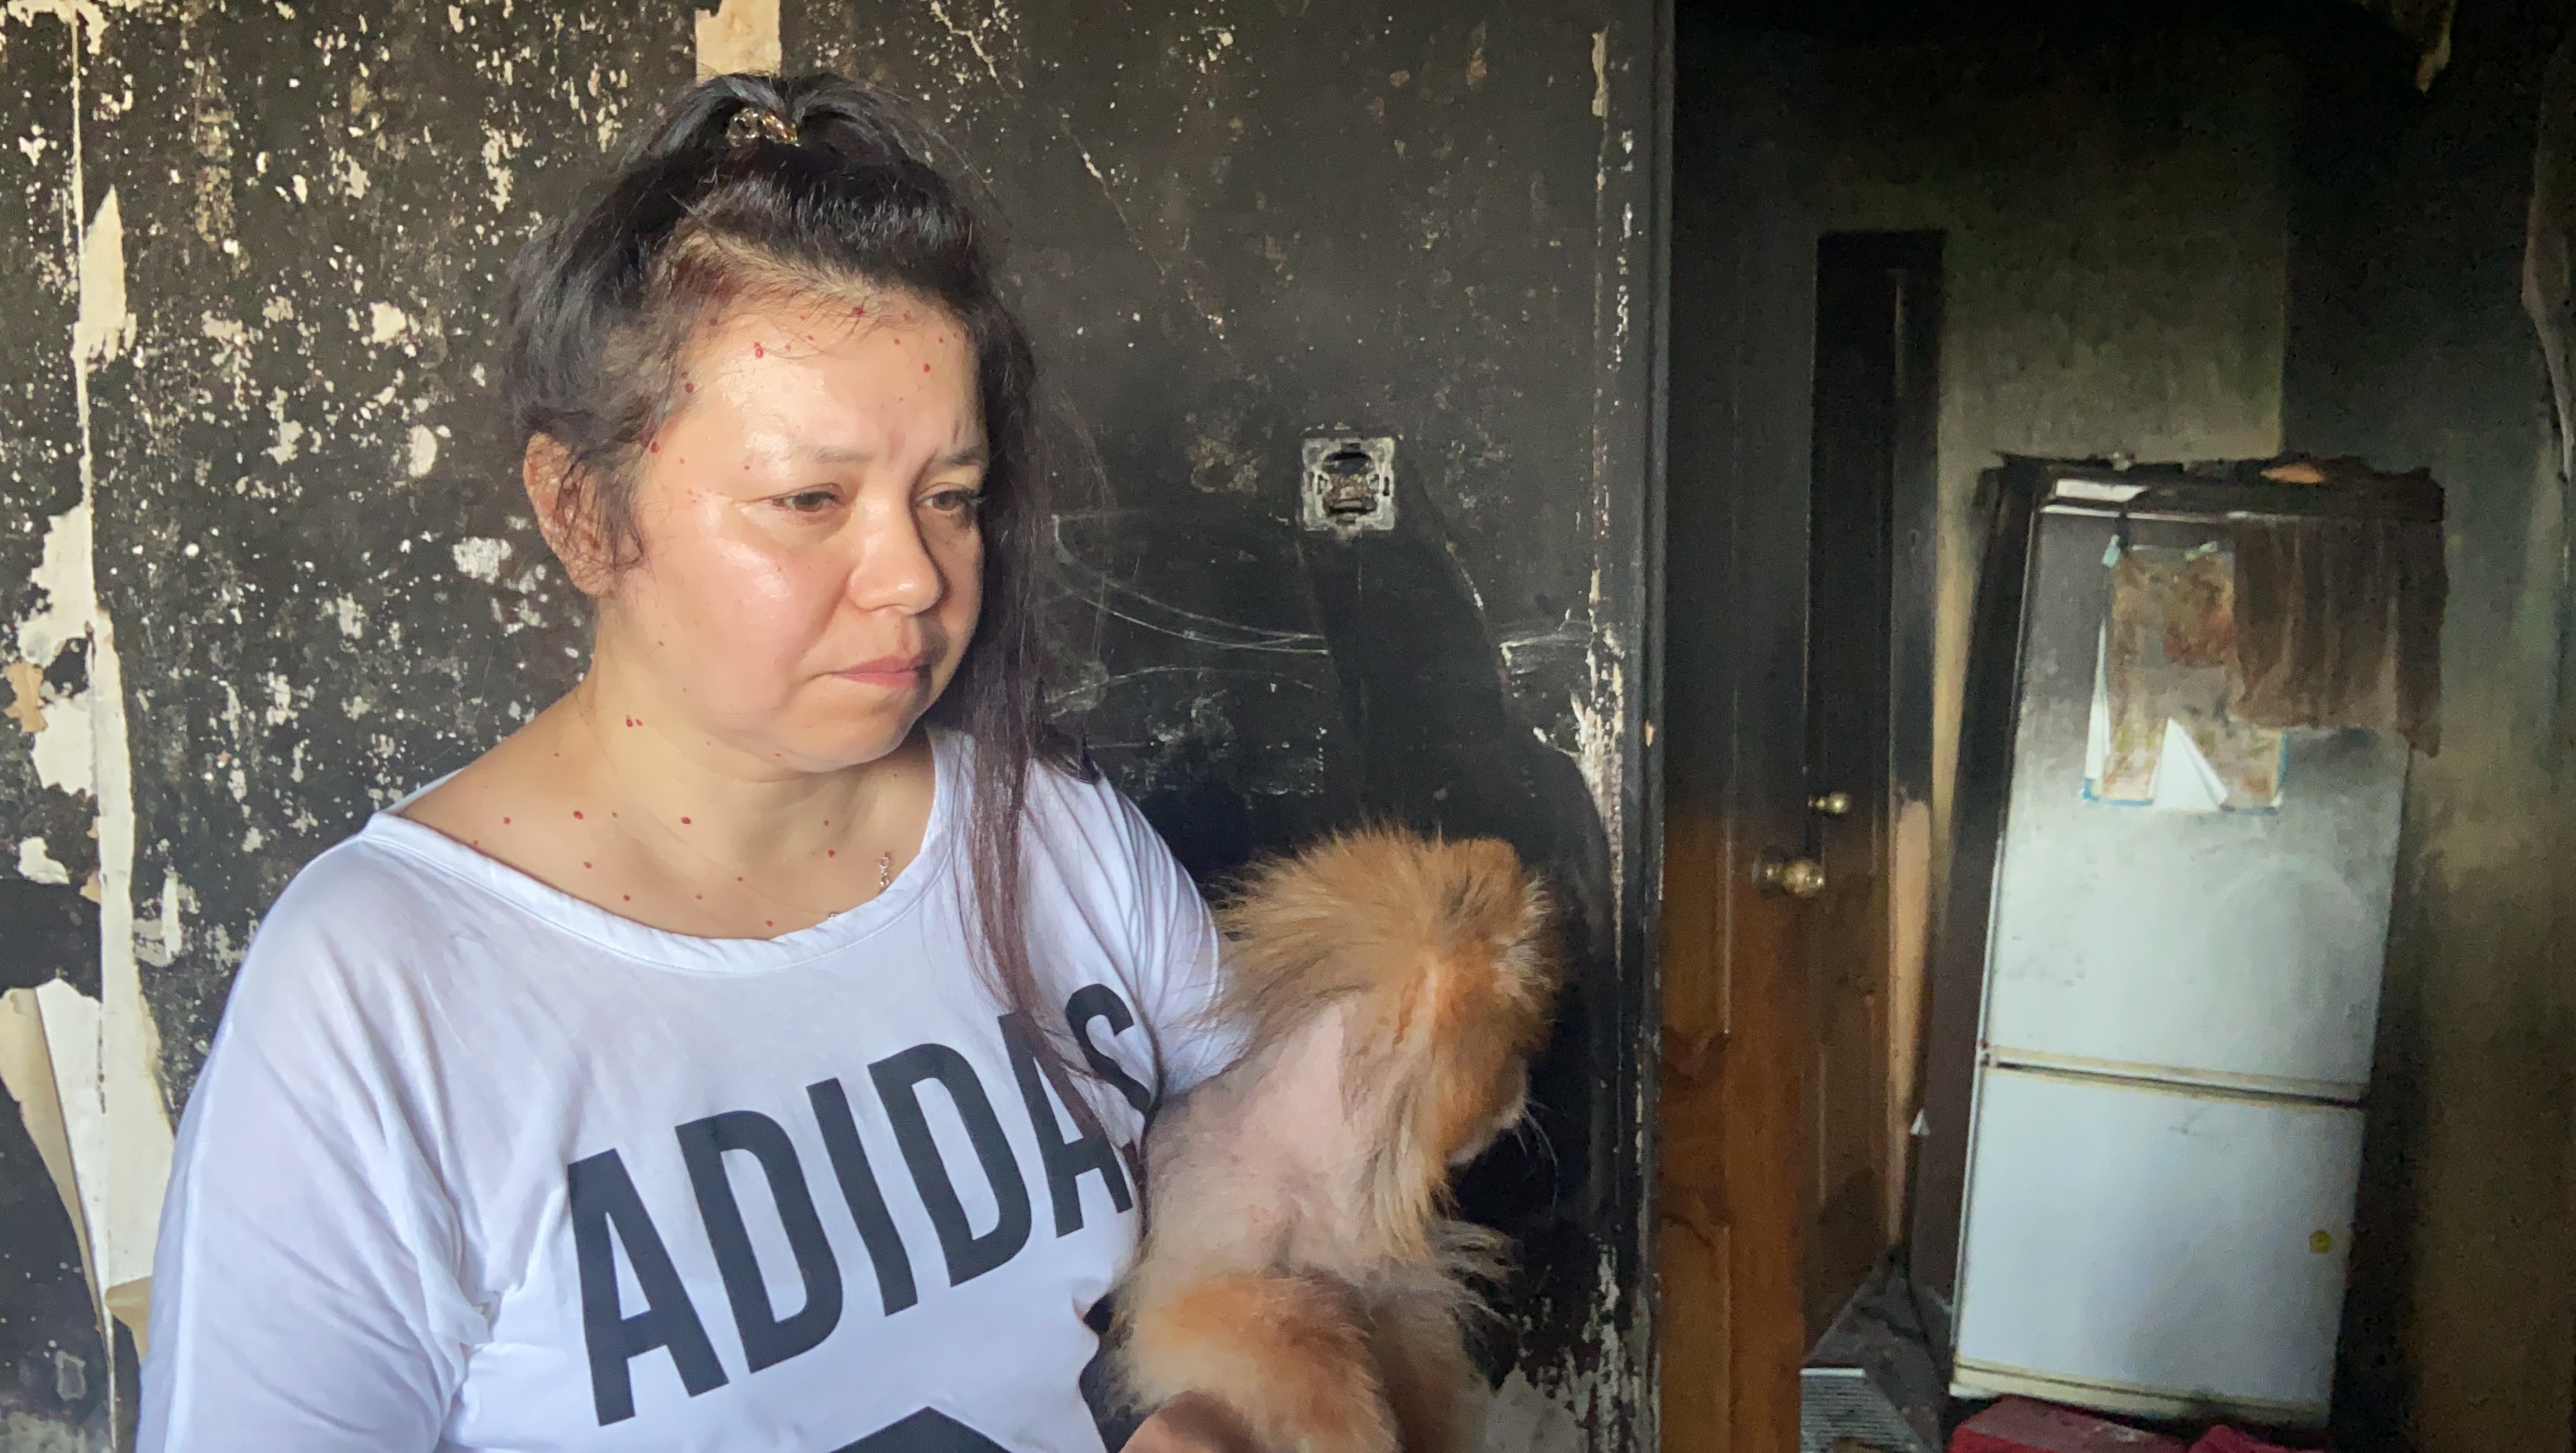 Хозяйка сгоревшей квартиры и погибших питомцев в Чебоксарах: "Проснулась, все в дыму"